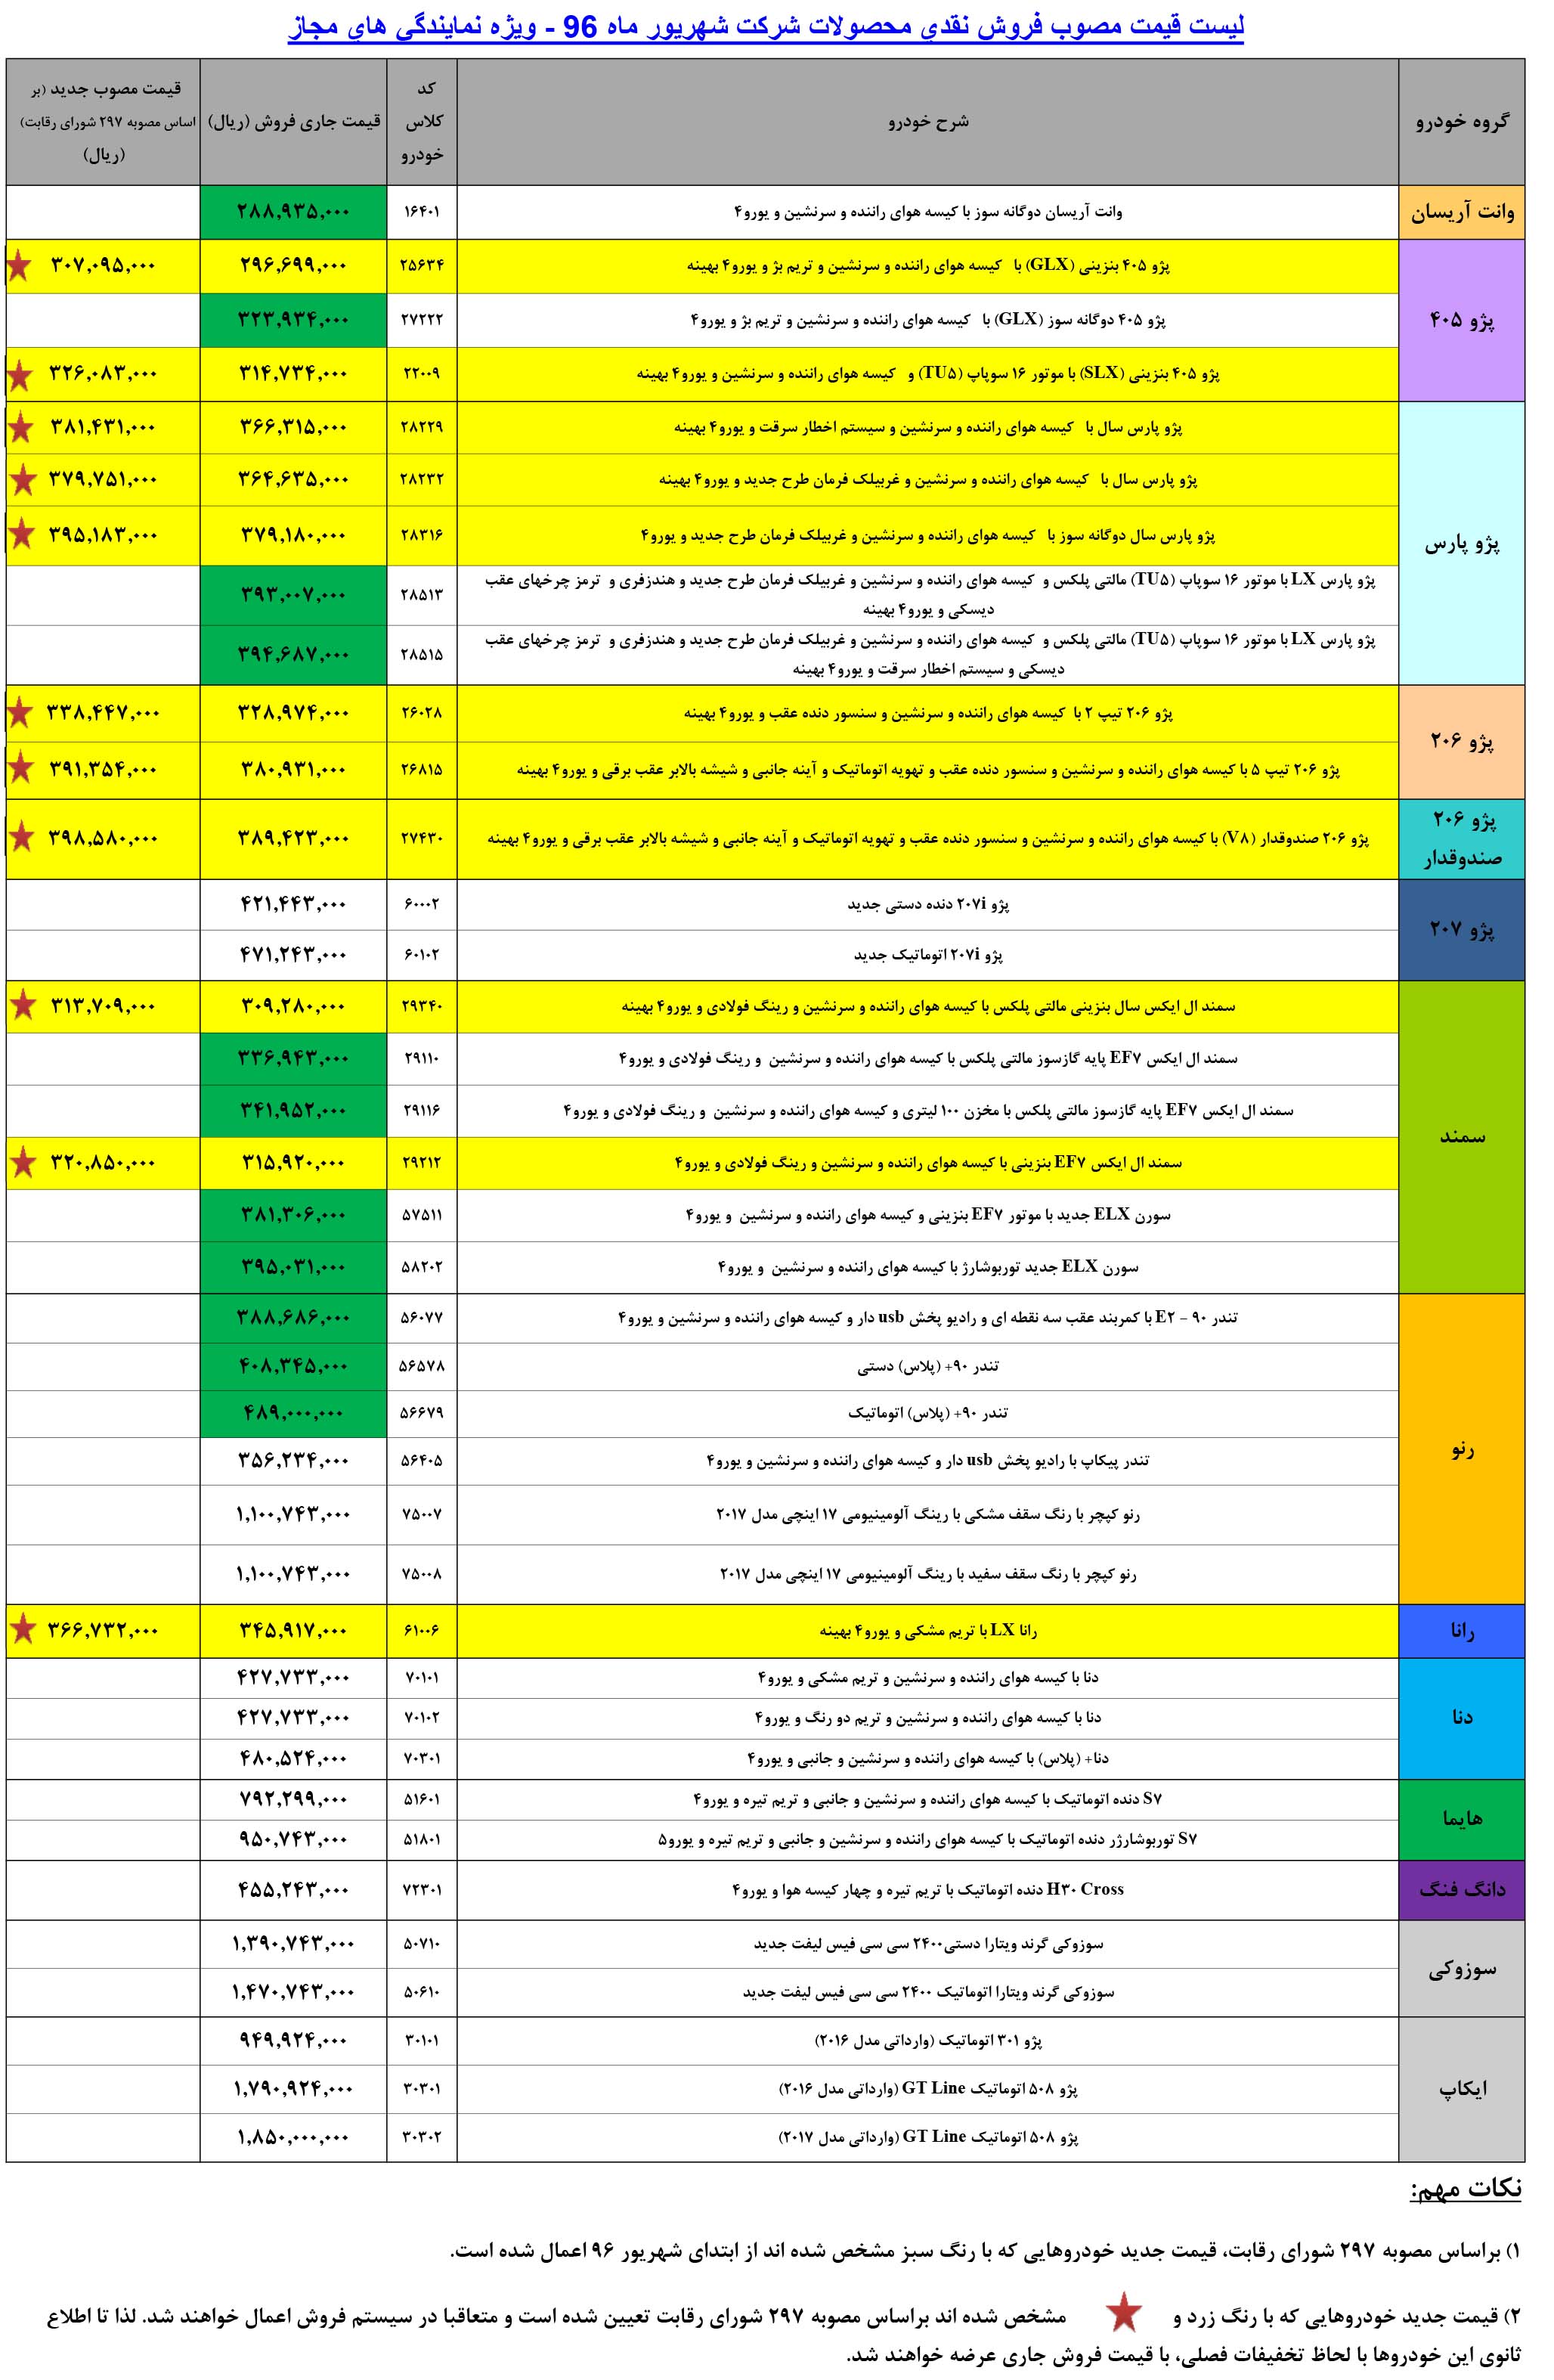  لیست قیمت جدید محصولات ایران خودرو​ - شهریور 96:
